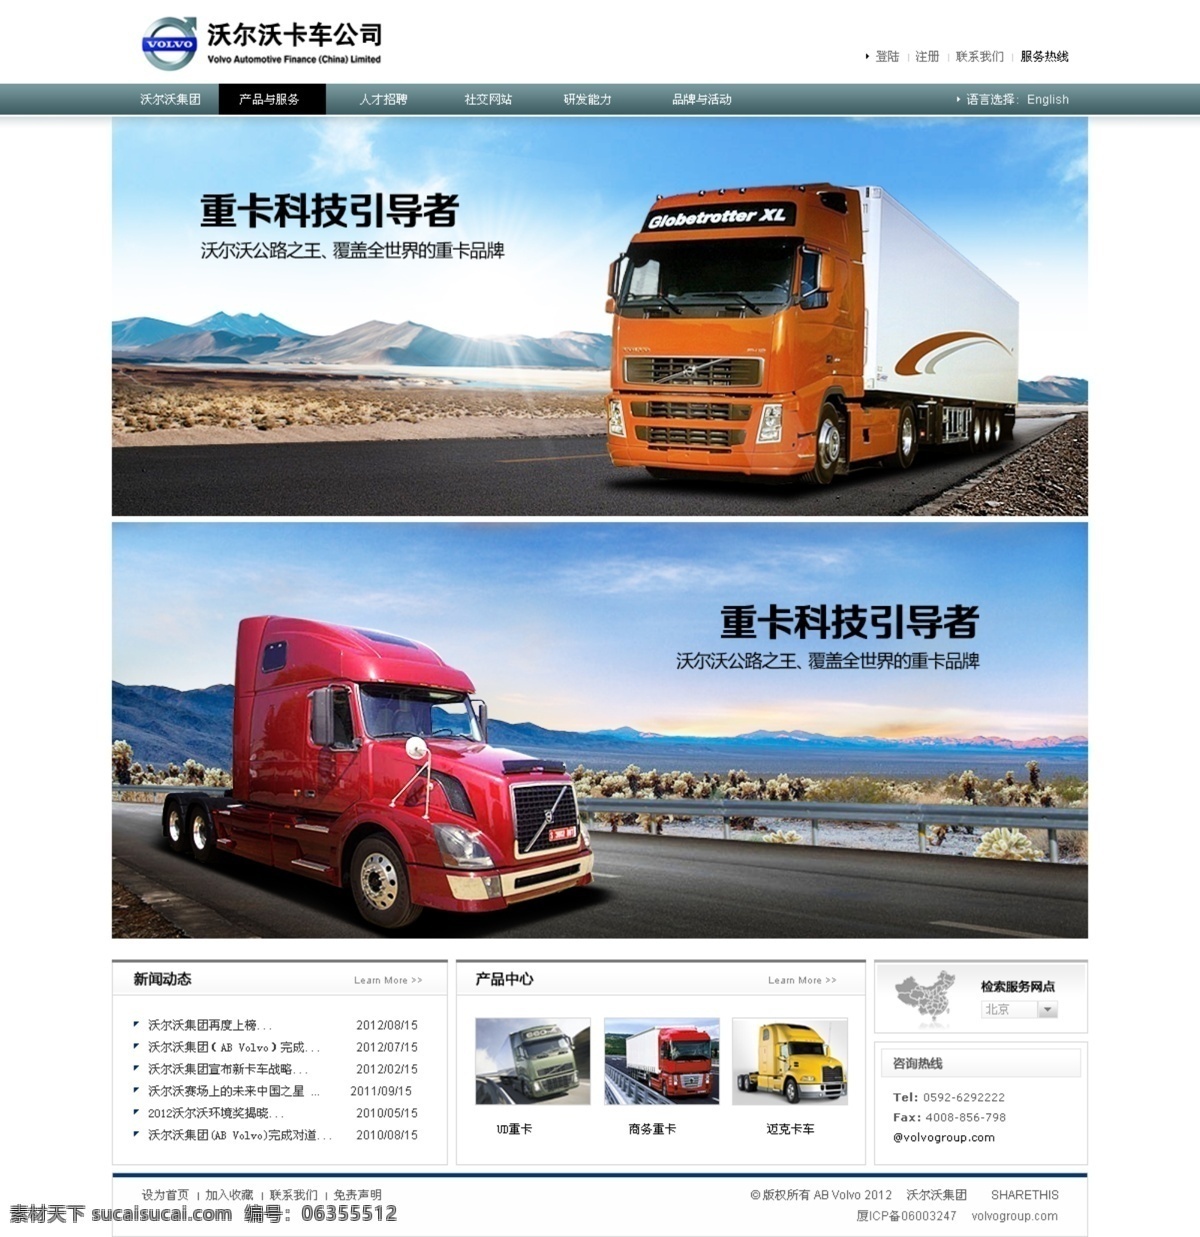 沃尔沃 汽车 网页 沃尔沃汽车 卡车 挂车 货车 banner 汽车网页 中文模版 网页模板 源文件